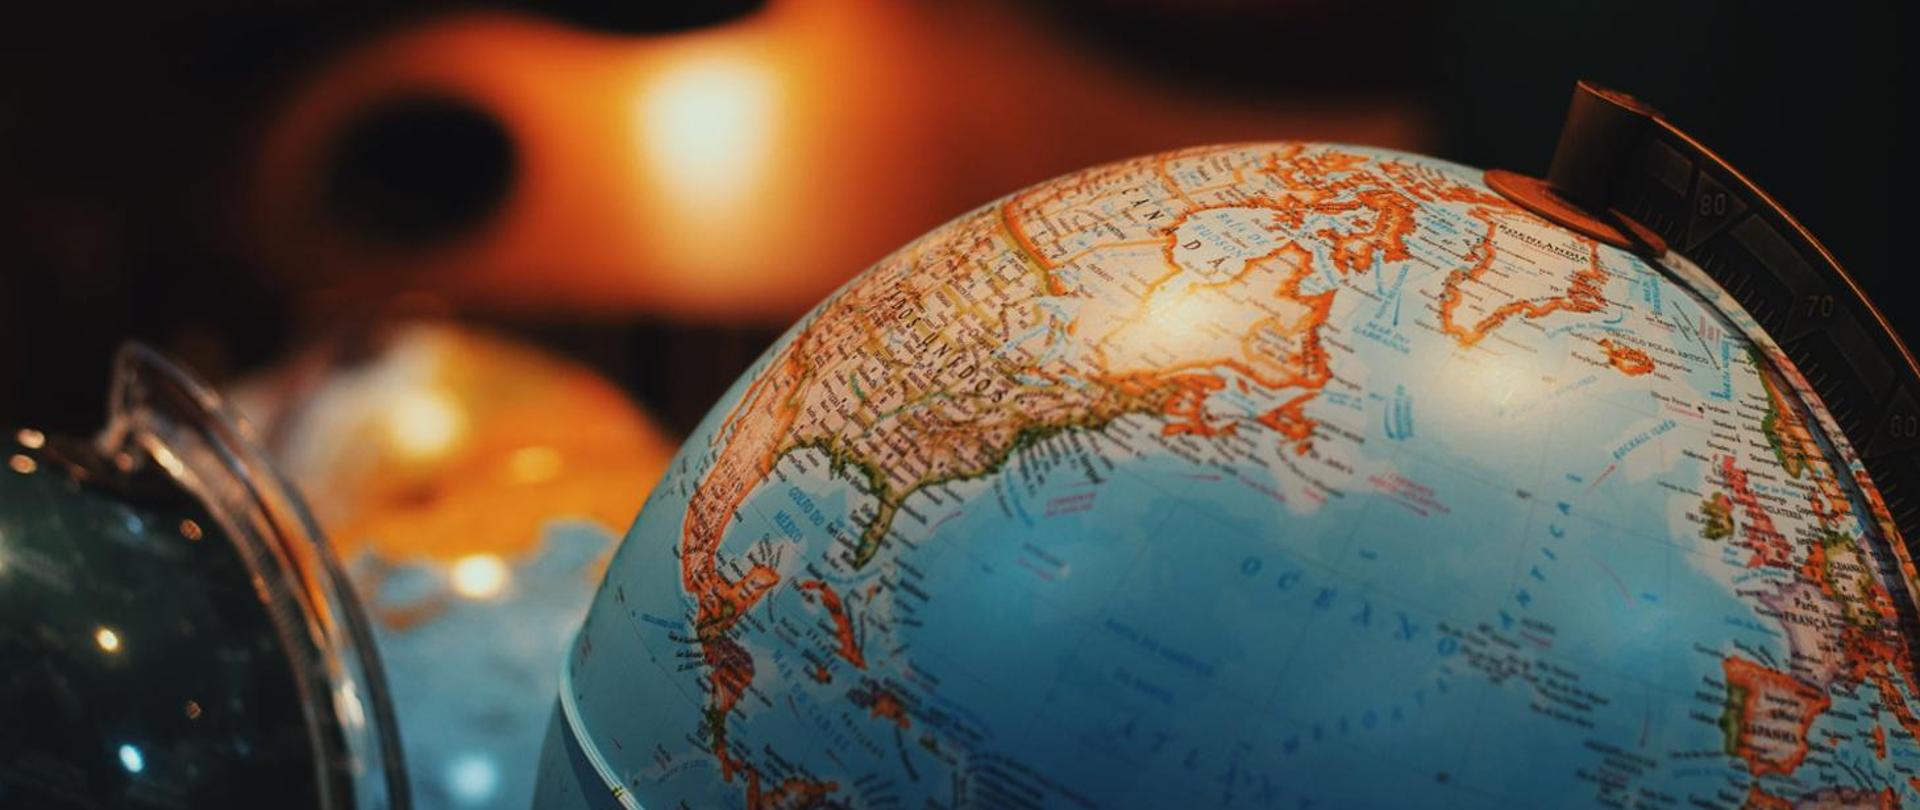 zdjęcie przestawia globus symbolizujący podróże zagraniczne